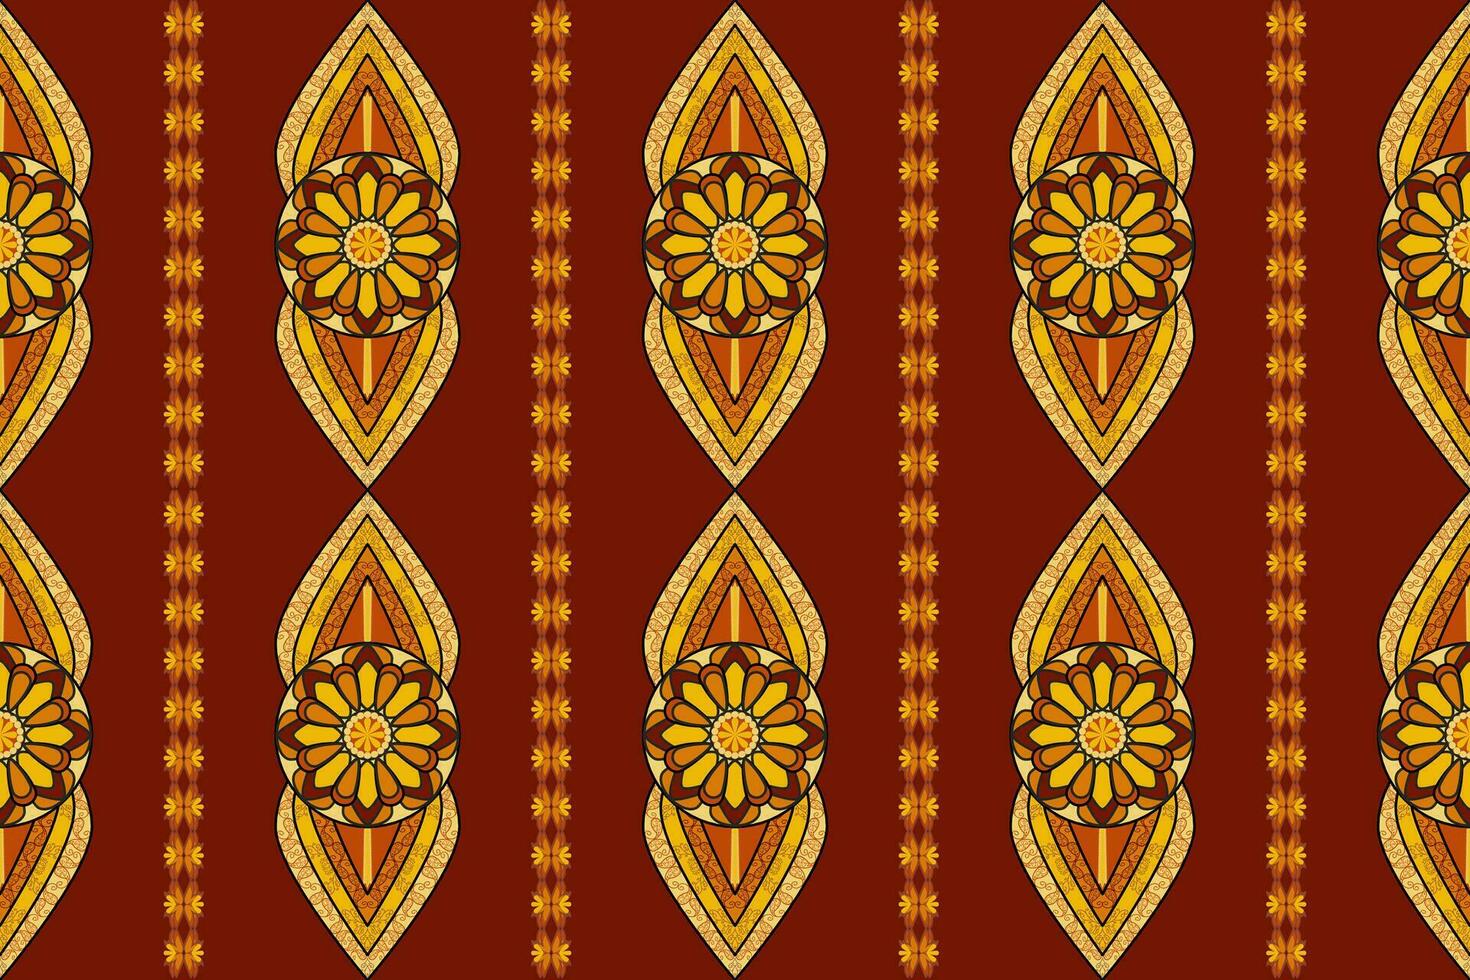 Contexte textile vecteur illustration fleuri élégant ancien style.géométrique ethnique Oriental modèle traditionnel aztèque style abstrait.design pour texture, tissu, vêtements, emballage, tapis.